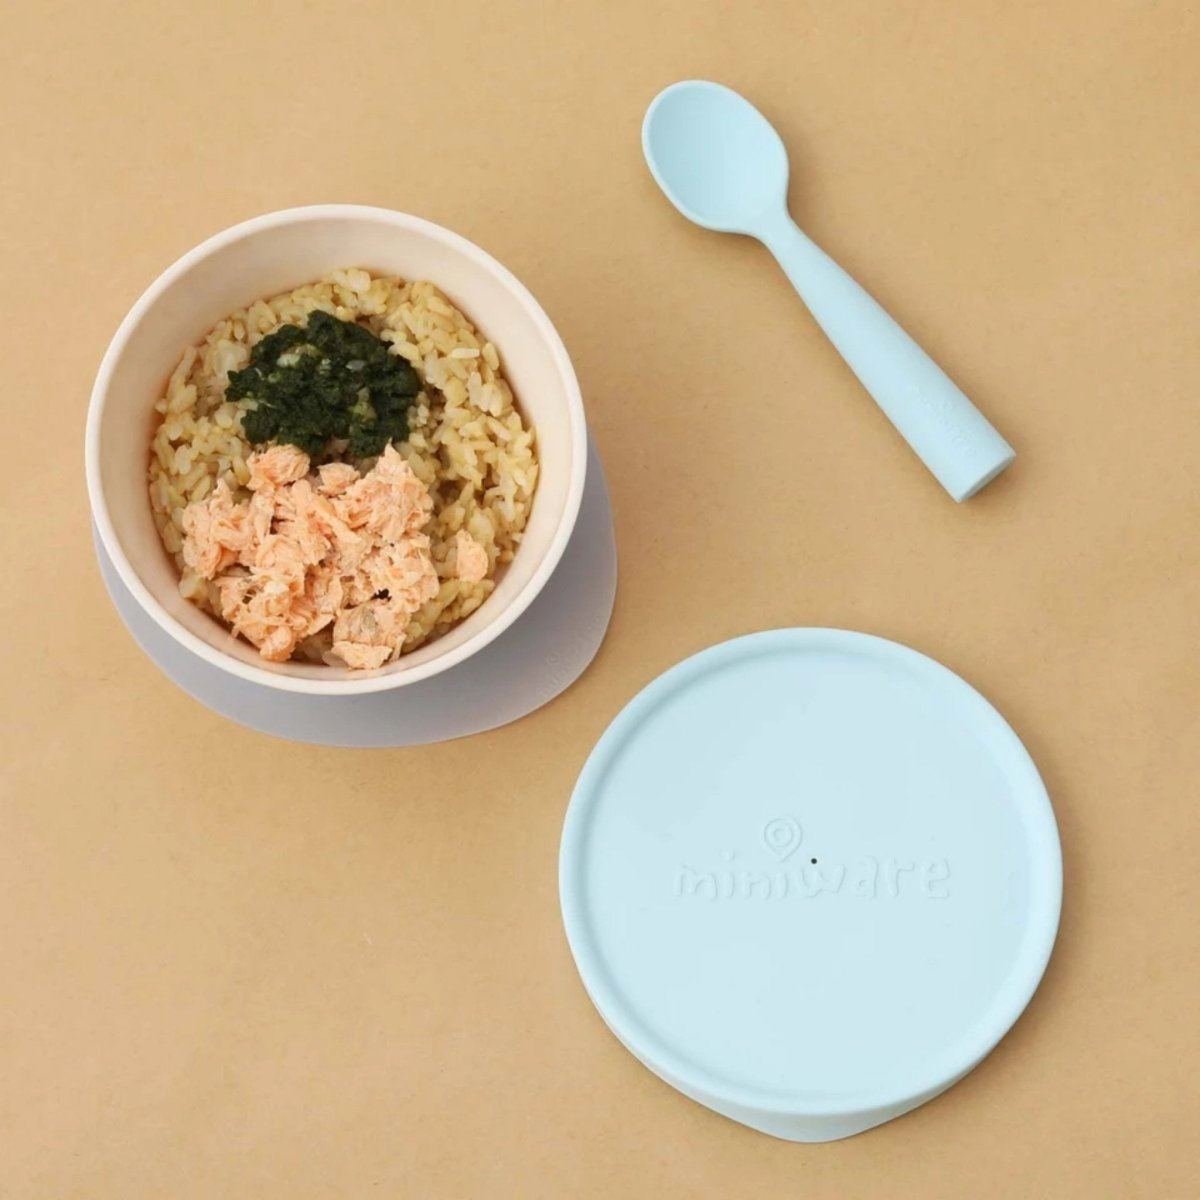 Miniware Suction Bowl With Spoon- Vanilla/Aqua - MWFBVA